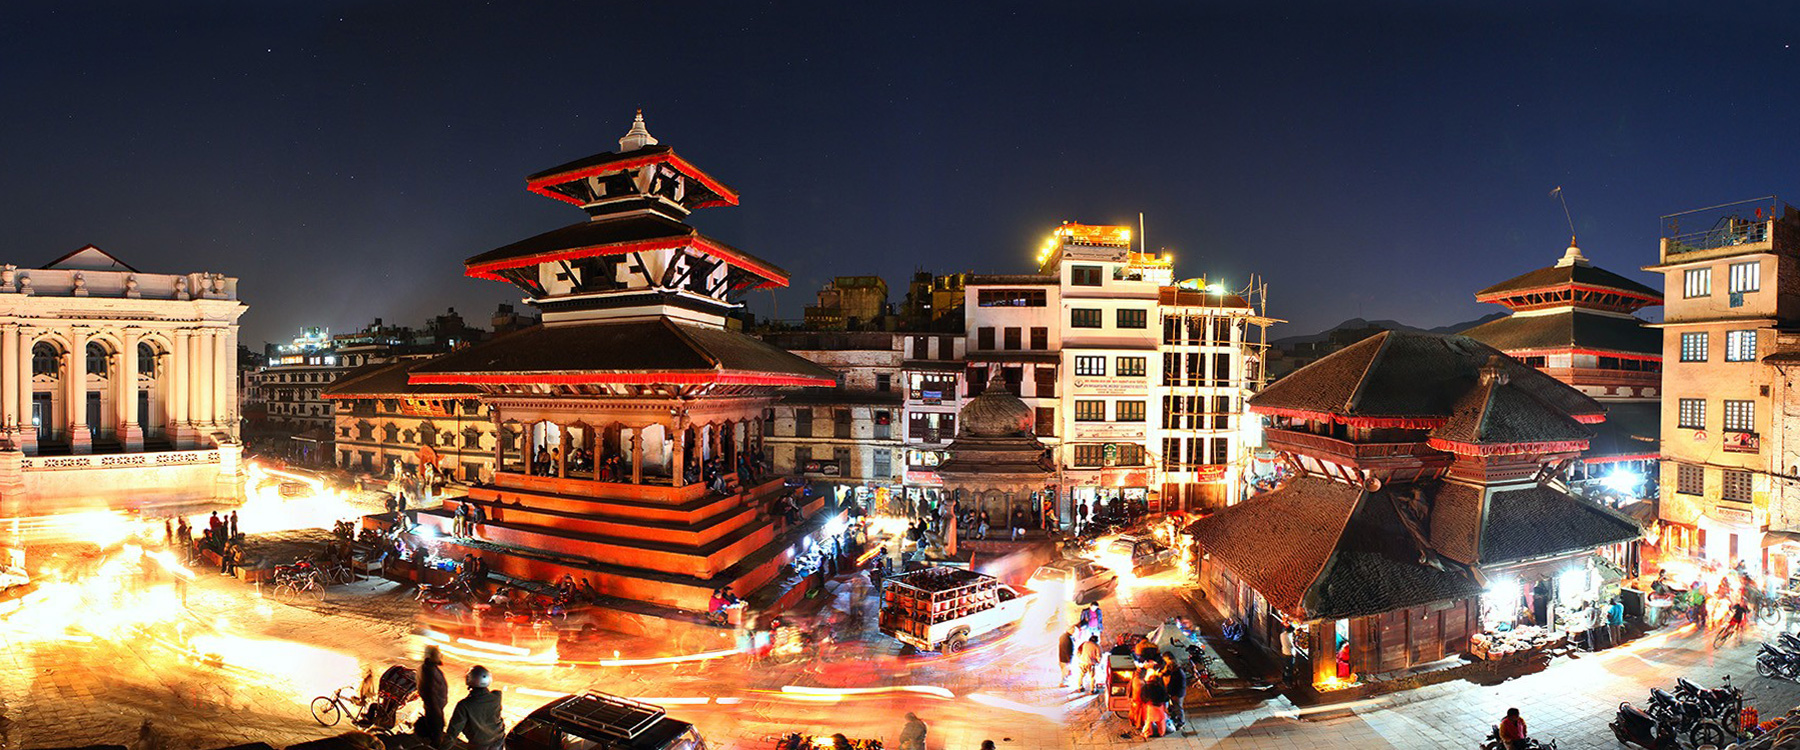 kathmandu-dubar-nepal.jpg